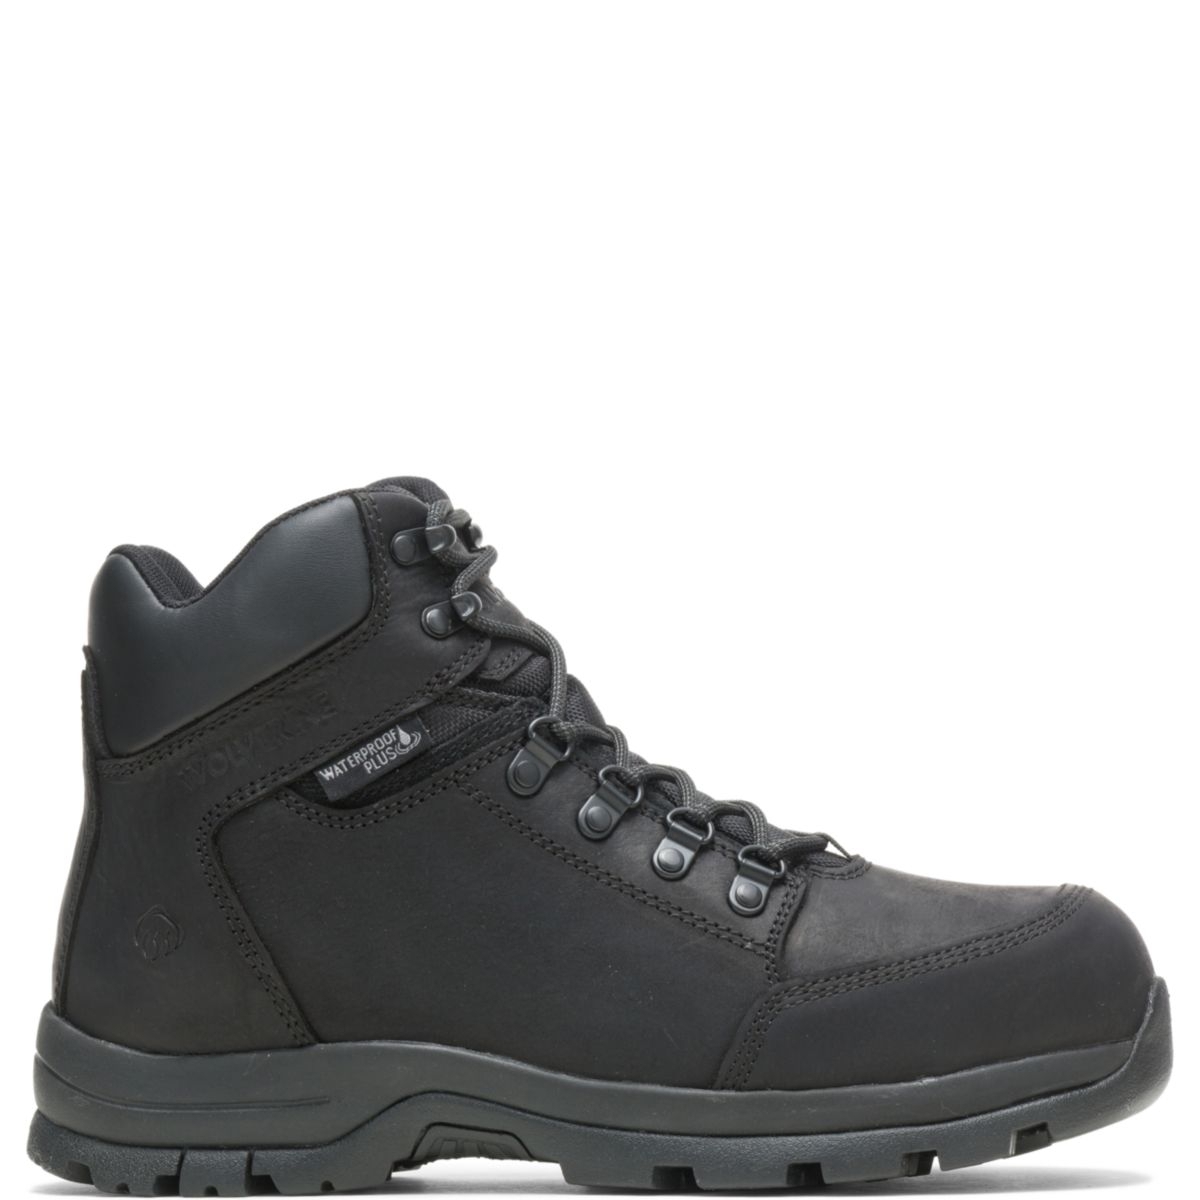 WOLVERINE Men's Grayson Steel Toe Waterproof Work Boot Black - W211042 BLACK - BLACK, 13 X-Wide